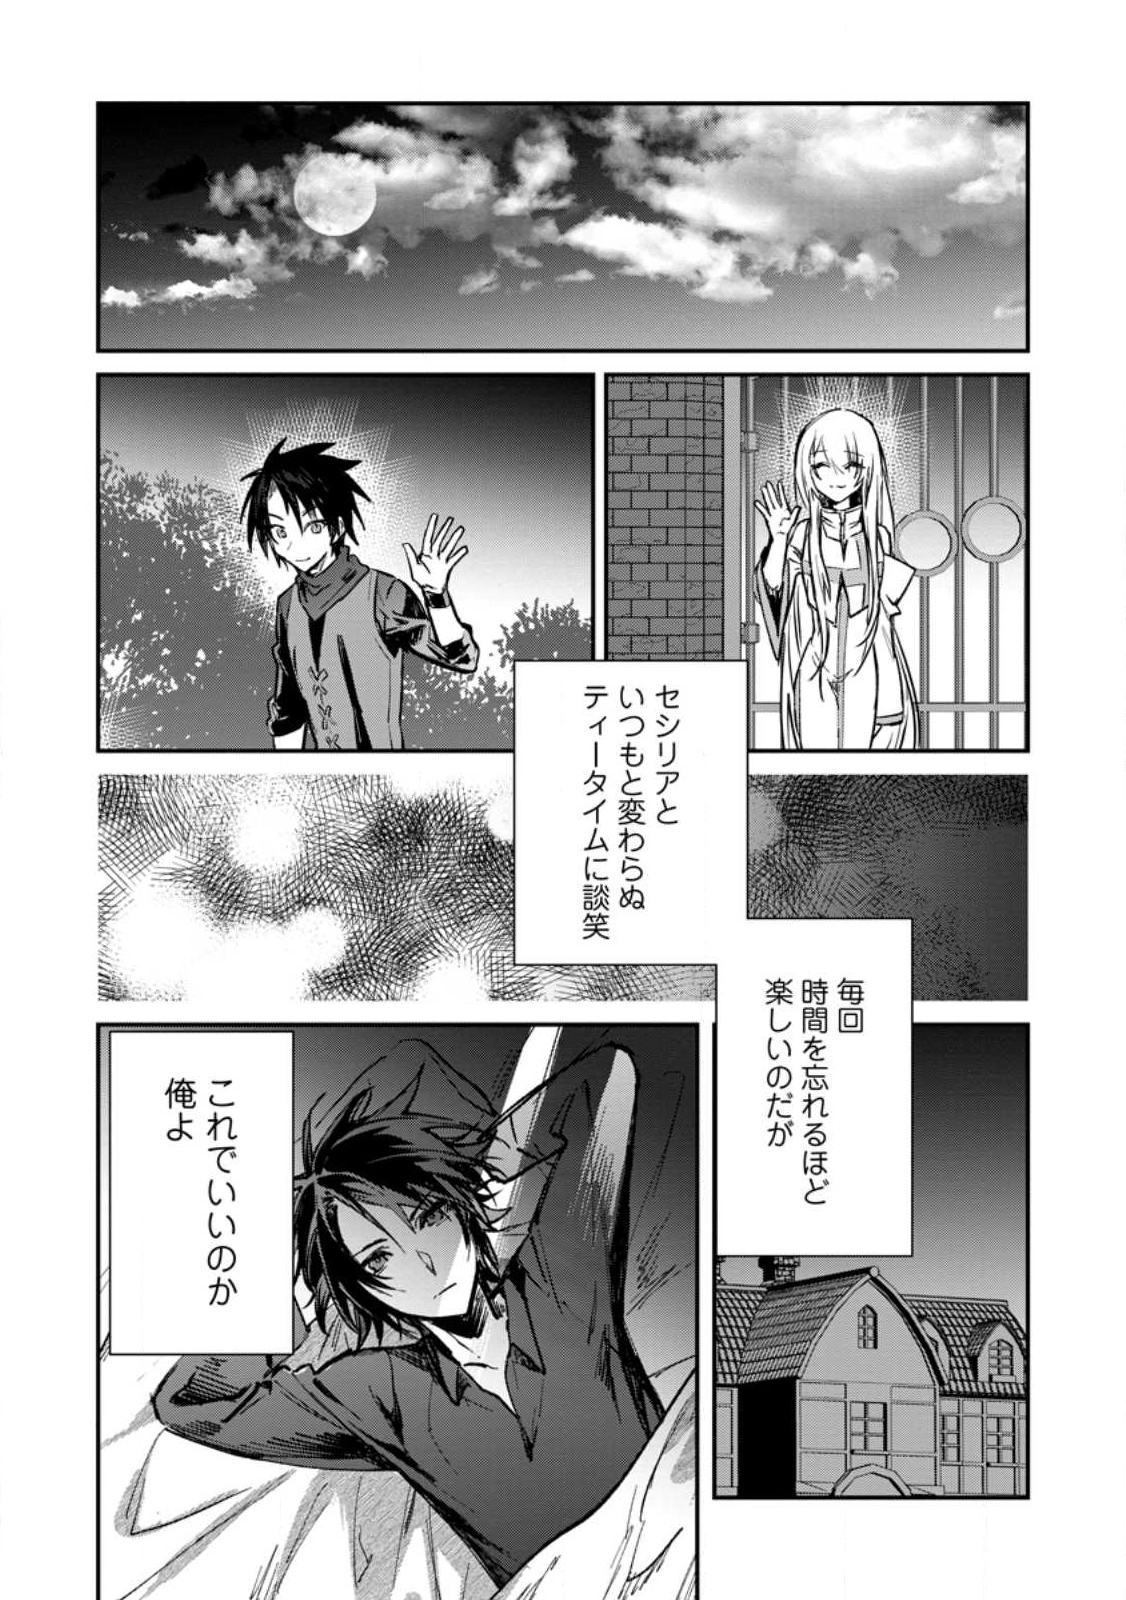 Read Yuusha Party ni Kawaii Ko ga Ita no de, Kokuhaku Shite Mita Manga  English [New Chapters] Online Free - MangaClash